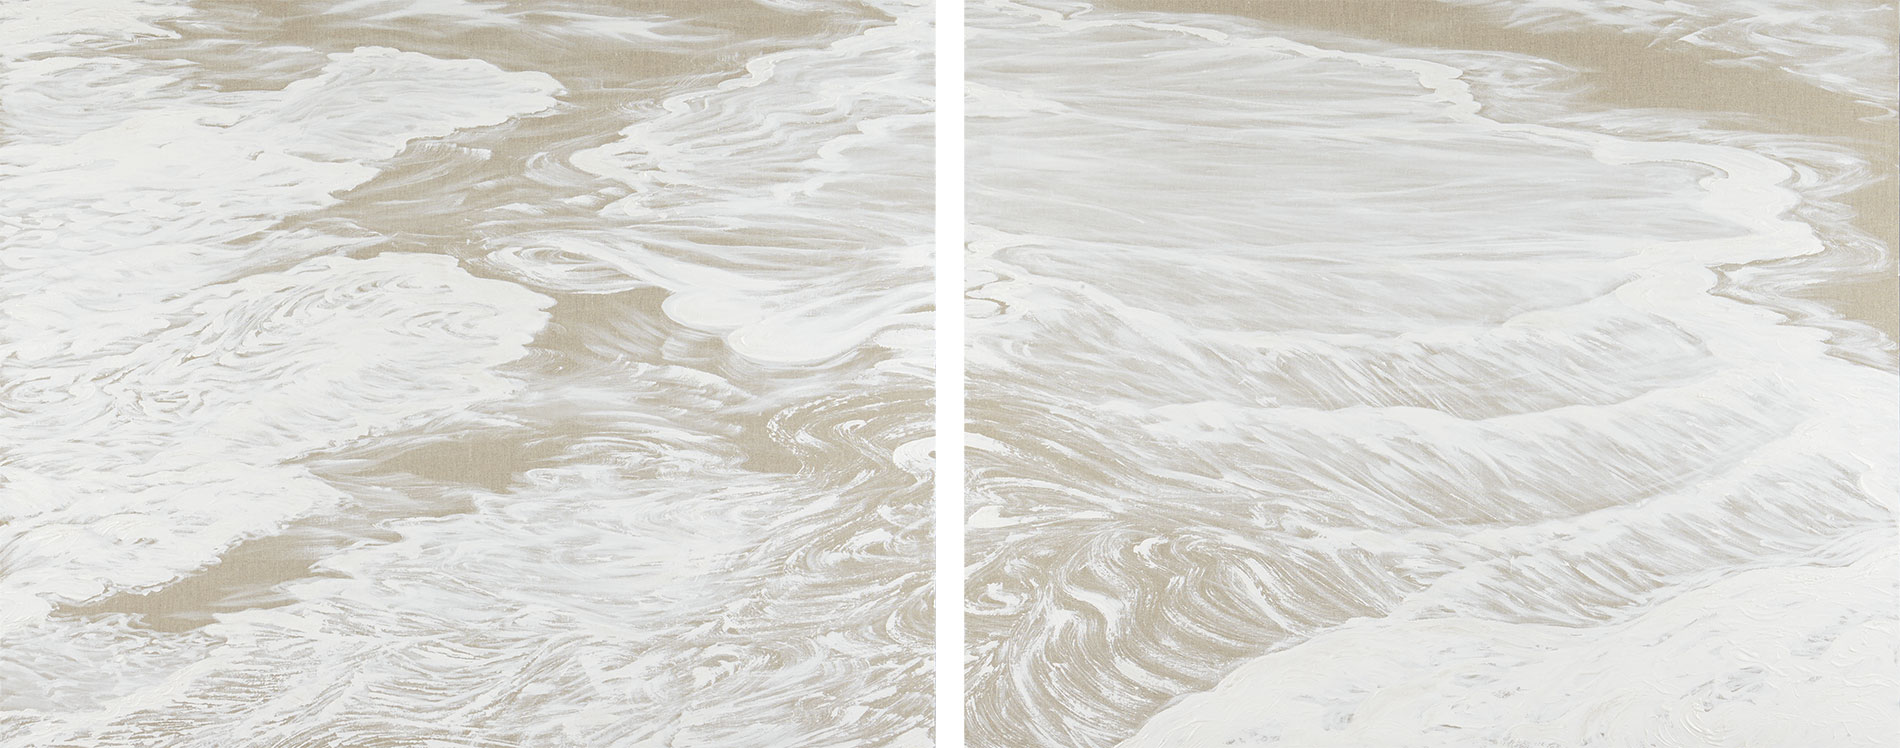 Silenzi di bianco (2014)
dittico 100x240 cm